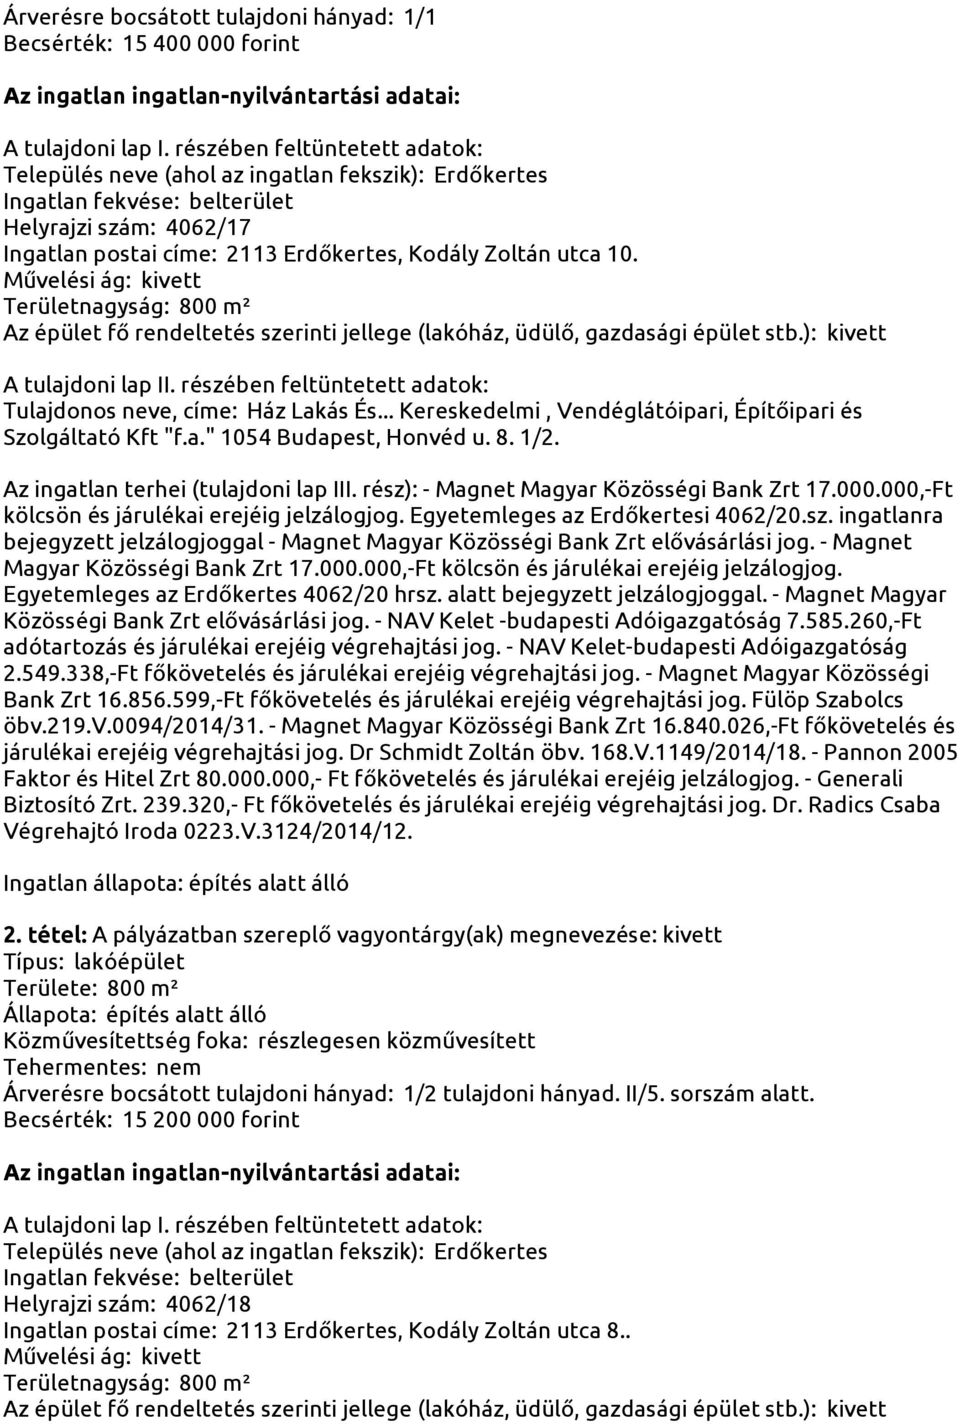 Az ingatlan terhei (tulajdoni lap III. rész): - Magnet Magyar Közösségi Bank Zrt 17.000.000,-Ft kölcsön és járulékai erejéig jelzálogjog. Egyetemleges az Erdőkertesi 4062/20.sz. ingatlanra bejegyzett jelzálogjoggal - Magnet Magyar Közösségi Bank Zrt elővásárlási jog.